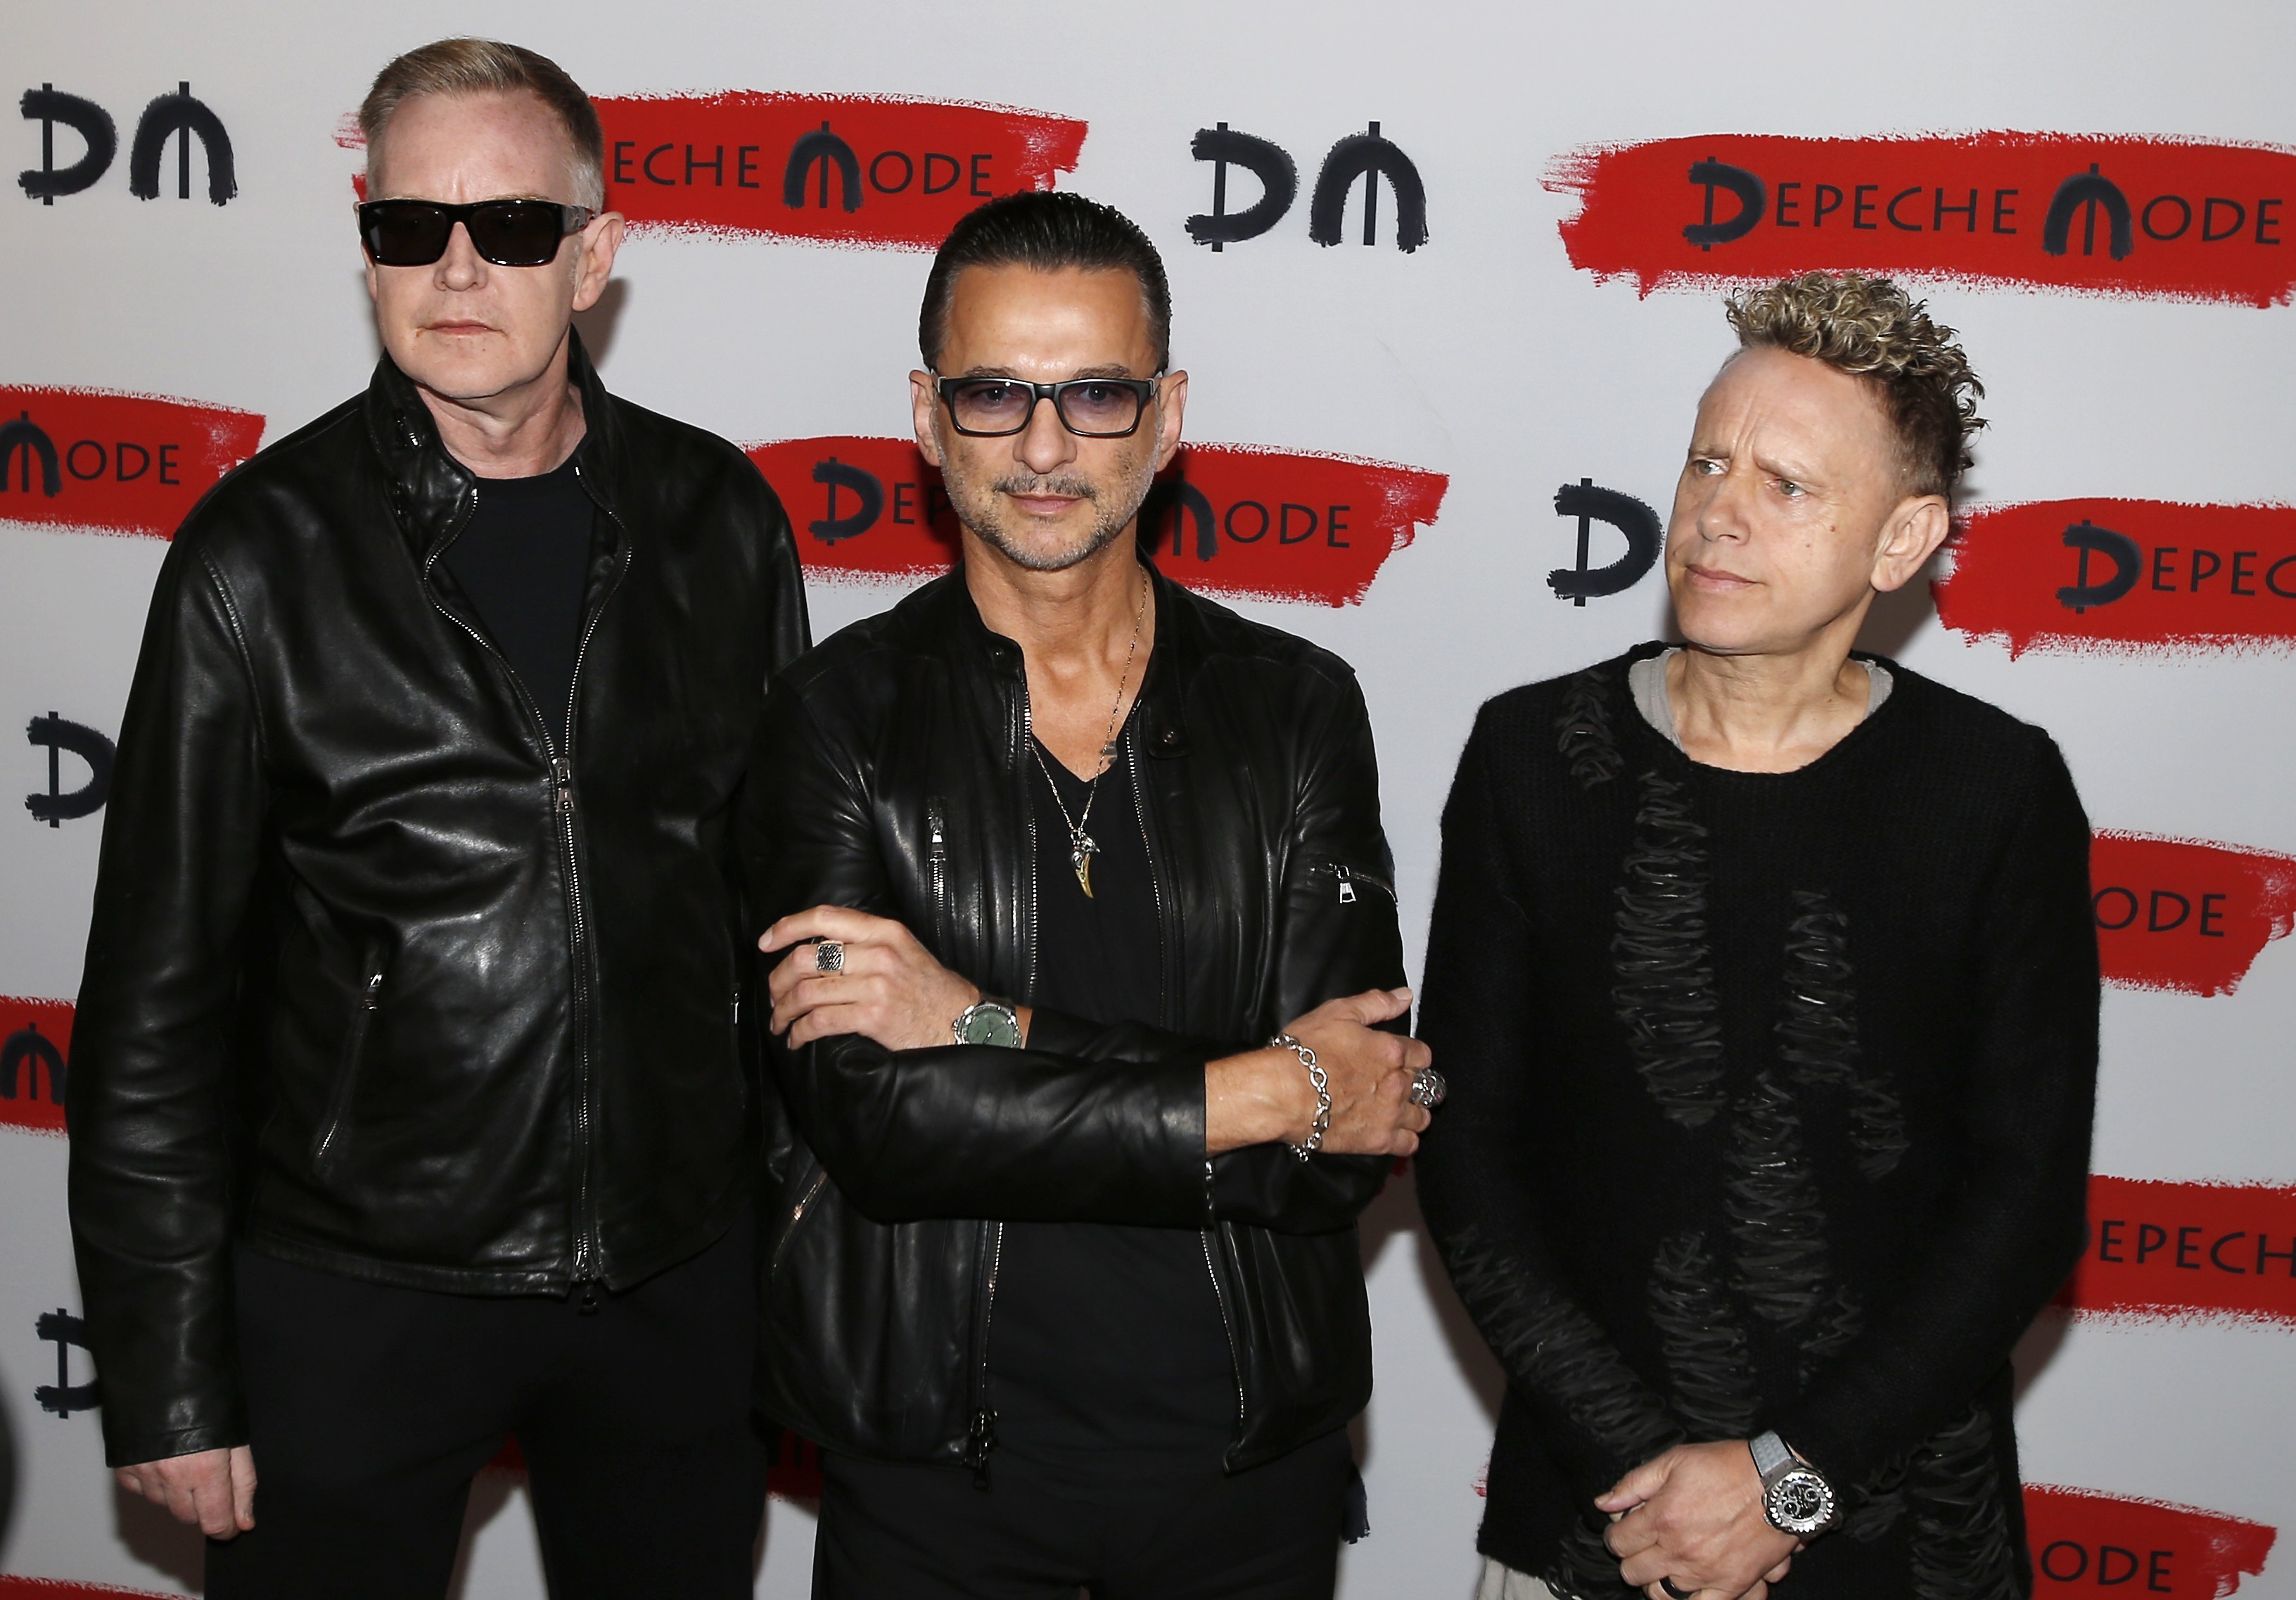 David gahan биография. Интервью с Дэйвом Гааном о Depeche Mode и Soulsavers